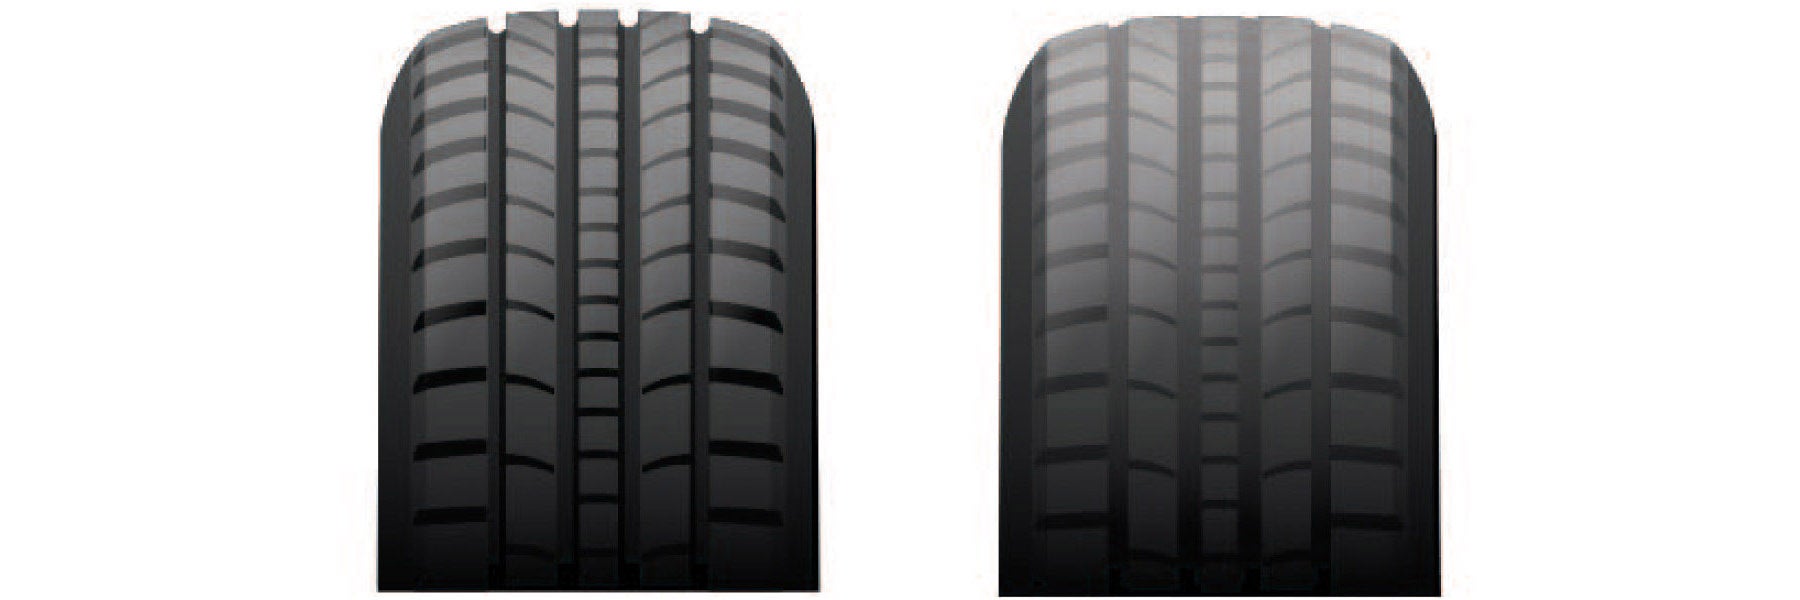 Tire tread depth comparison at Central Kia of Plano in Plano TX